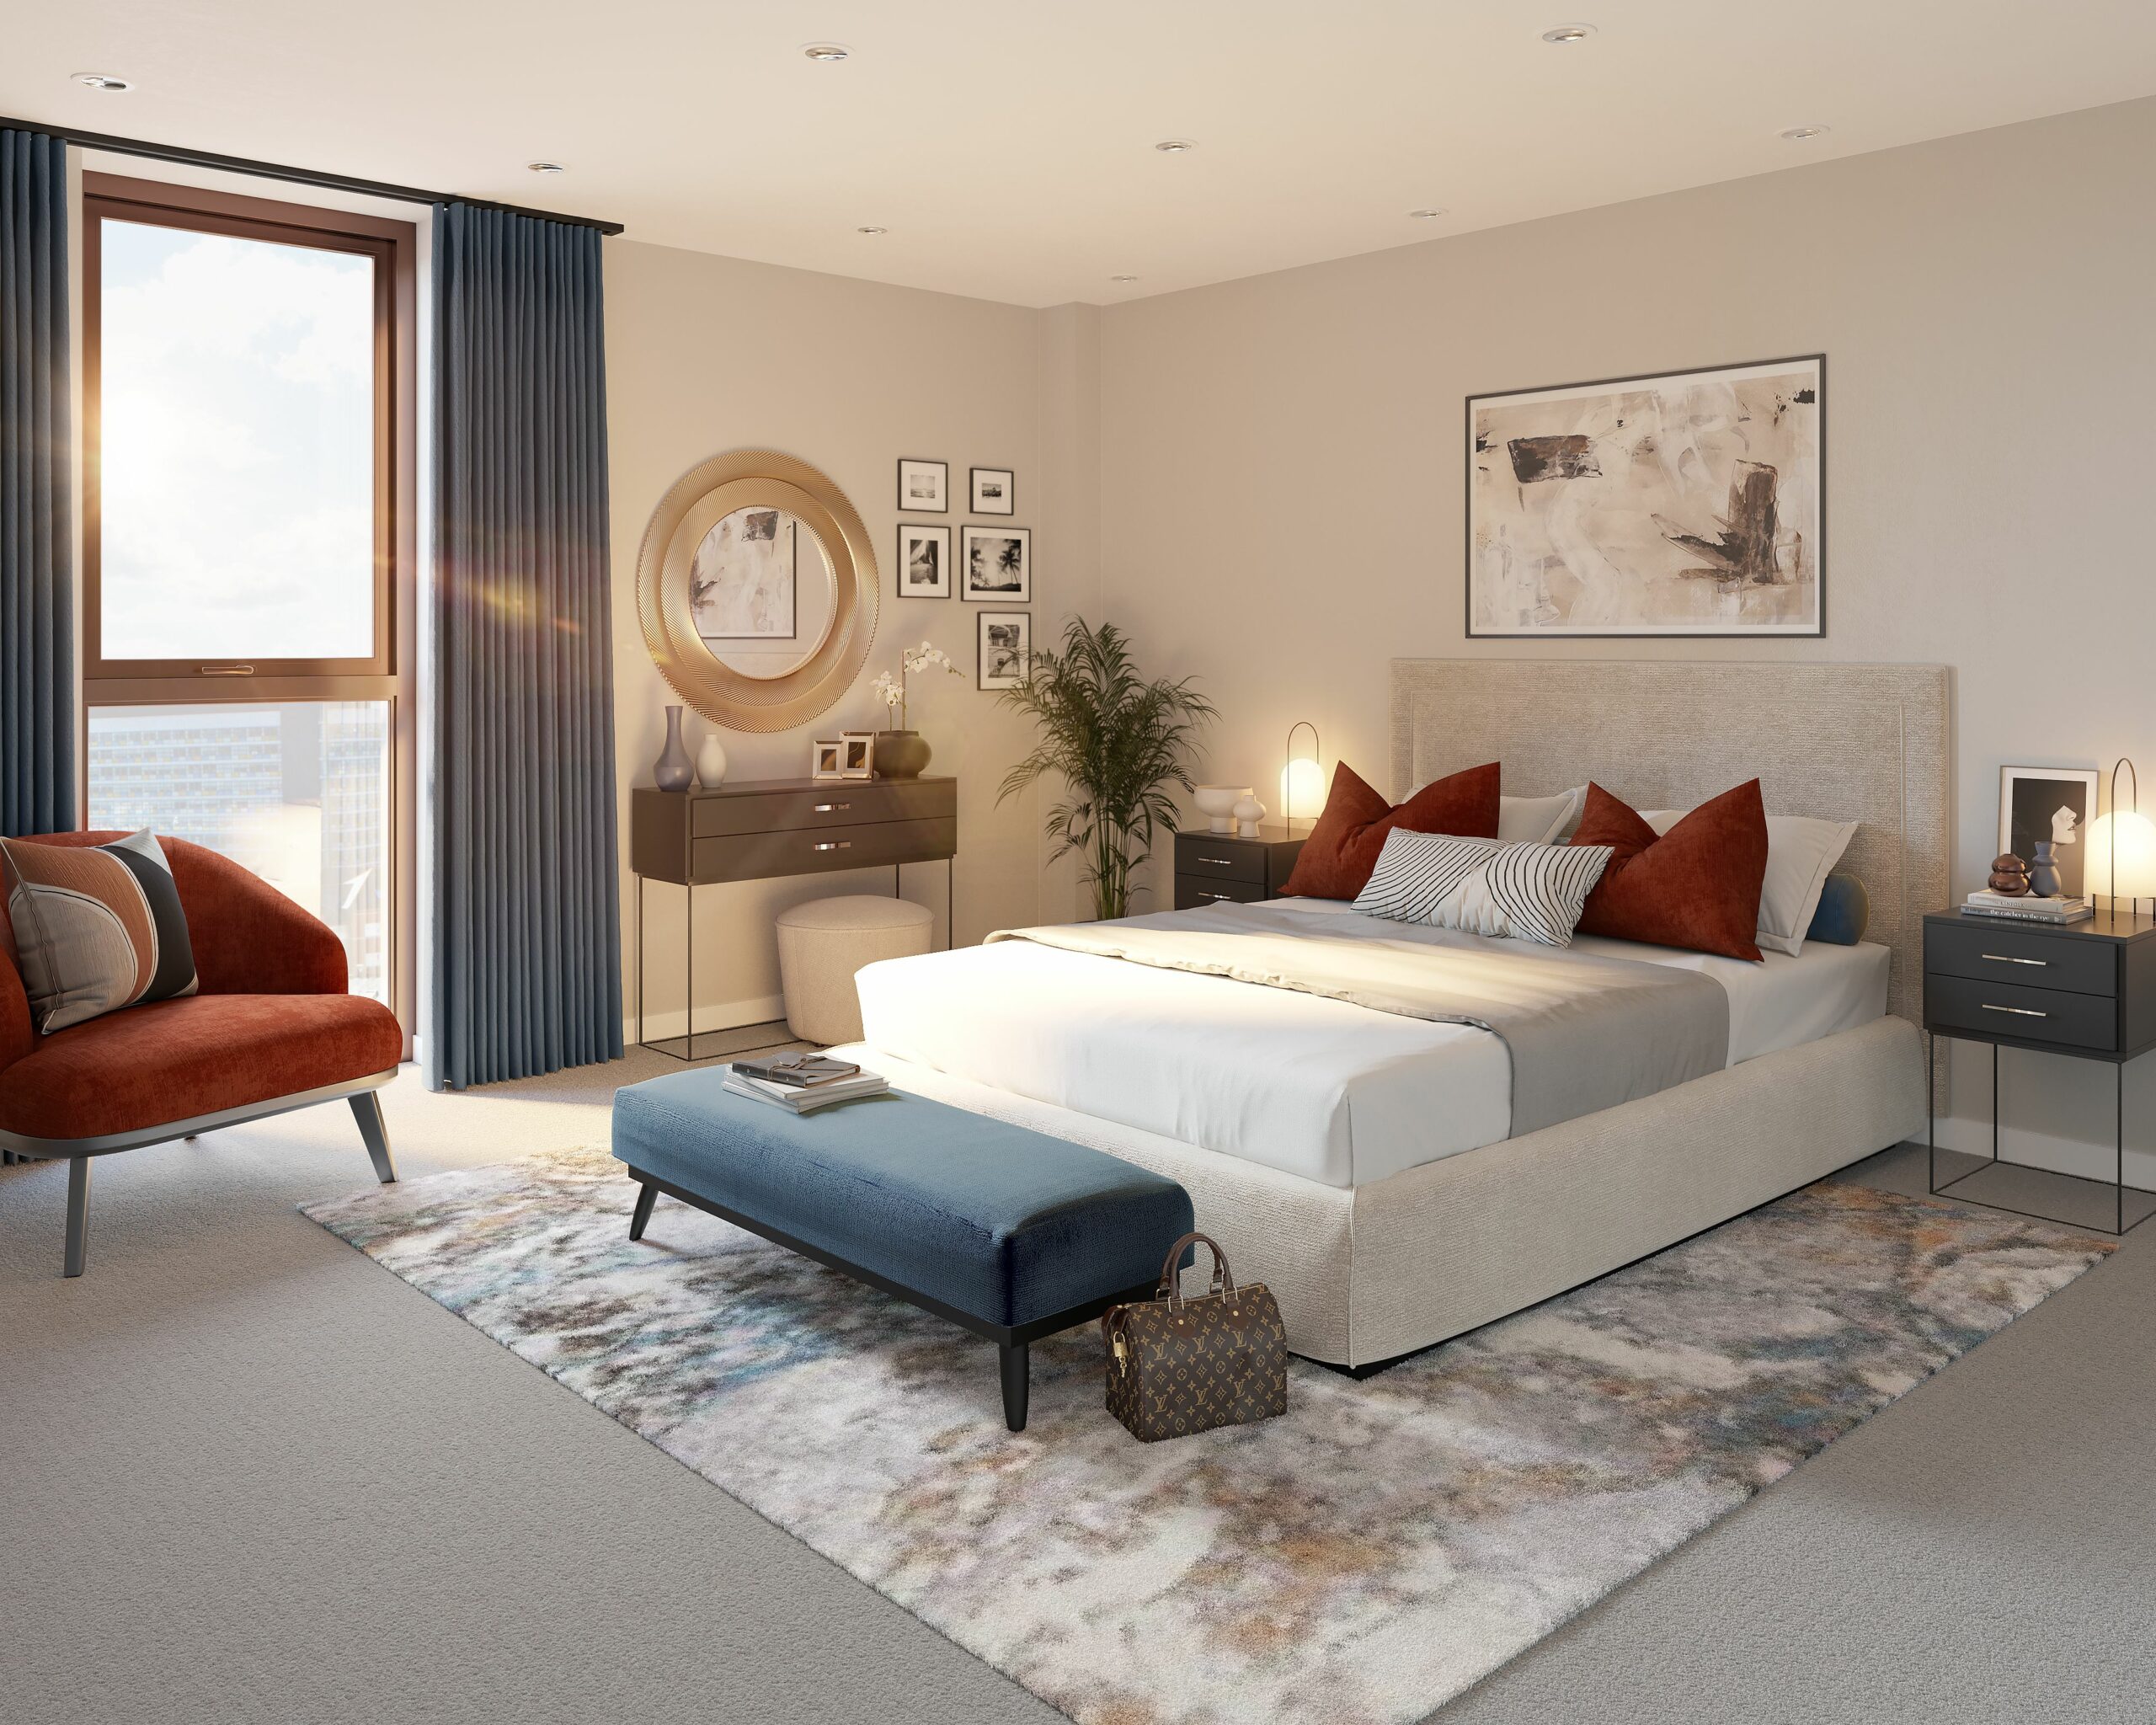 lomax manchester interior master bedroom cgi 3d